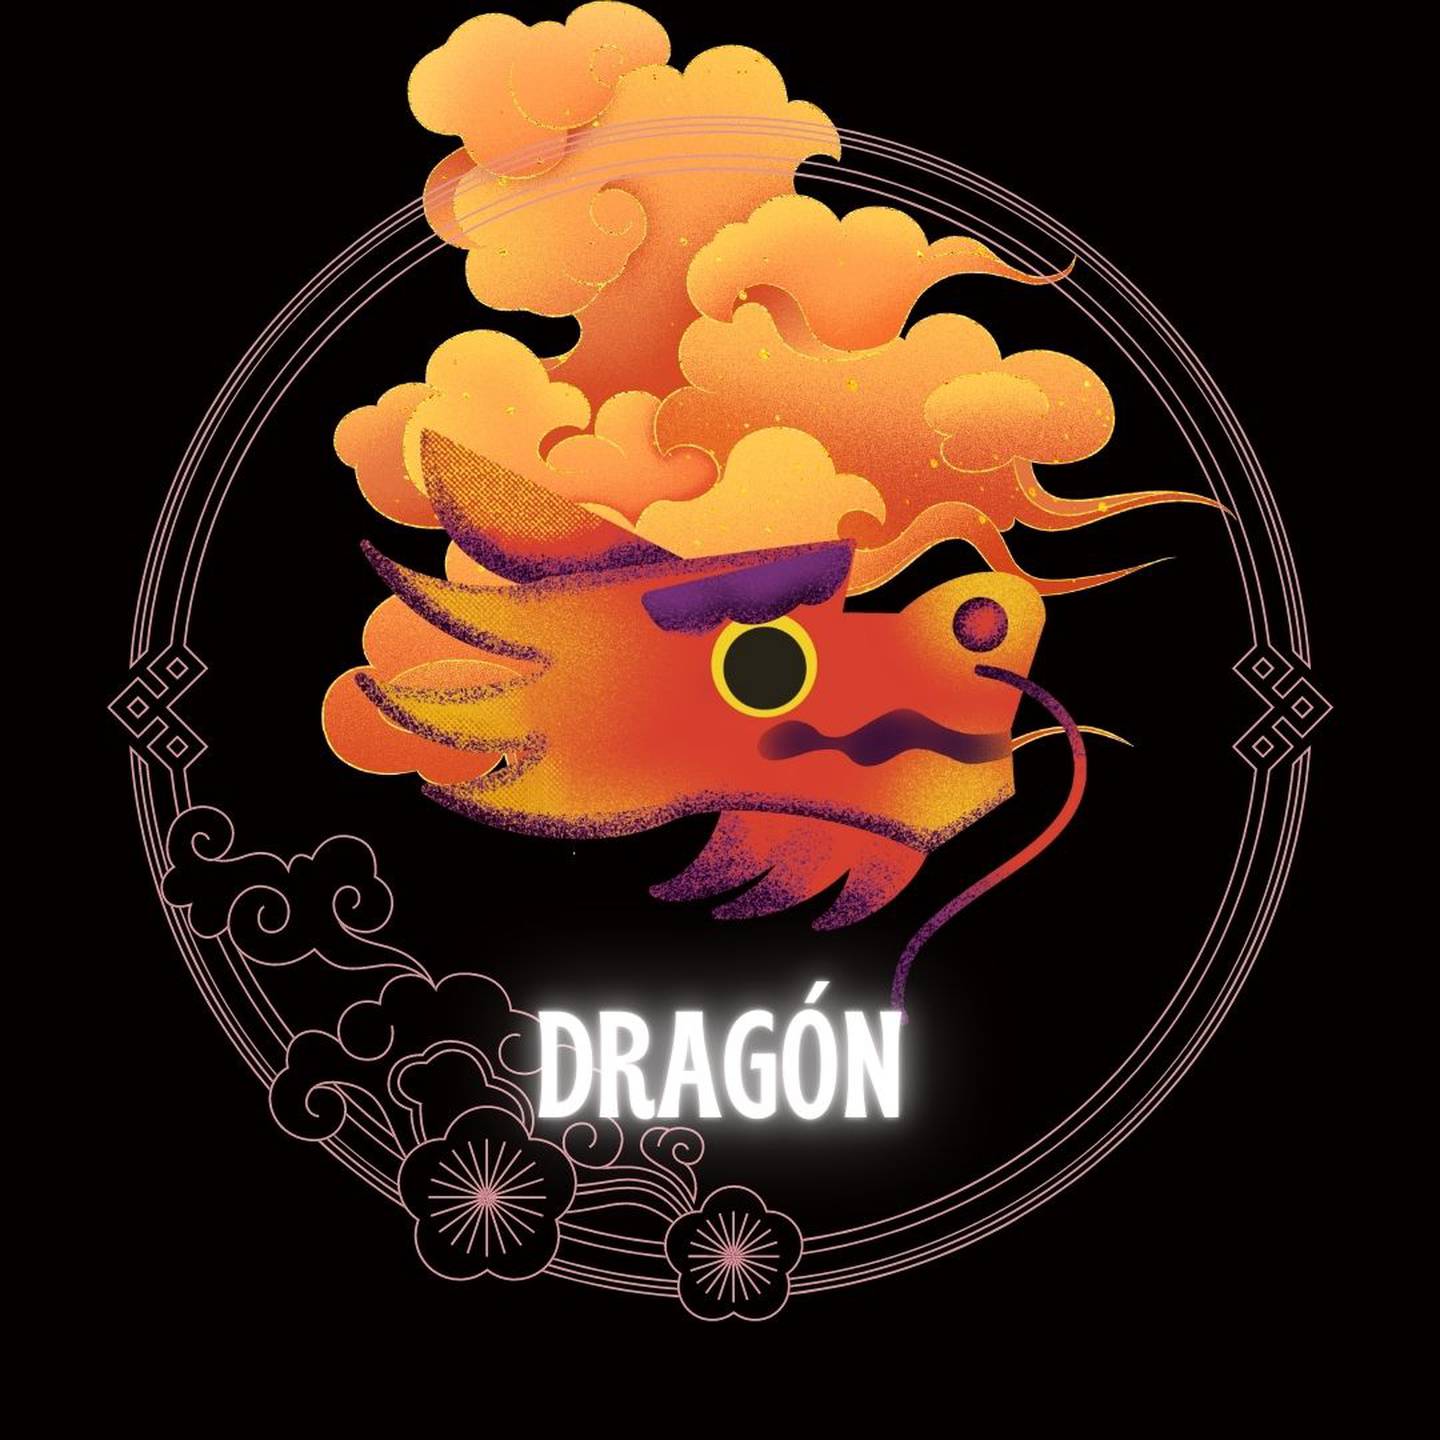 Caricatura de un dragón sobre un fondo negro, con motivos decorativos orientales dorados con forma de nube y círculo, que enmarcan el signo. Abajo del dibujo aparece la palabra dragón.